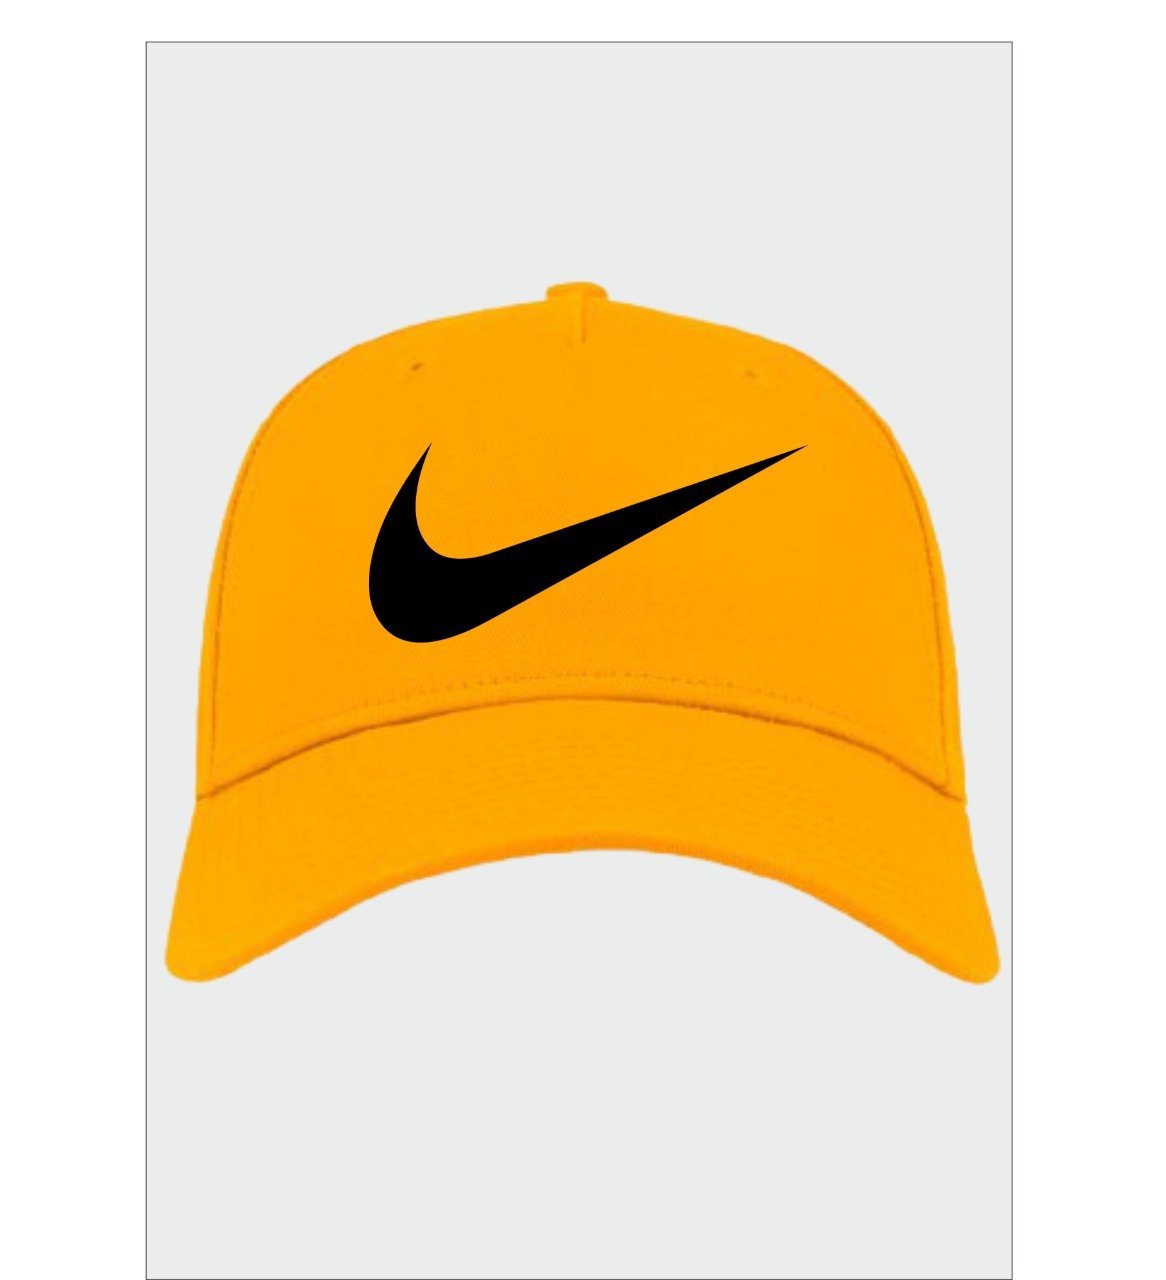 Nike Logo Printed Cap (Free Size)